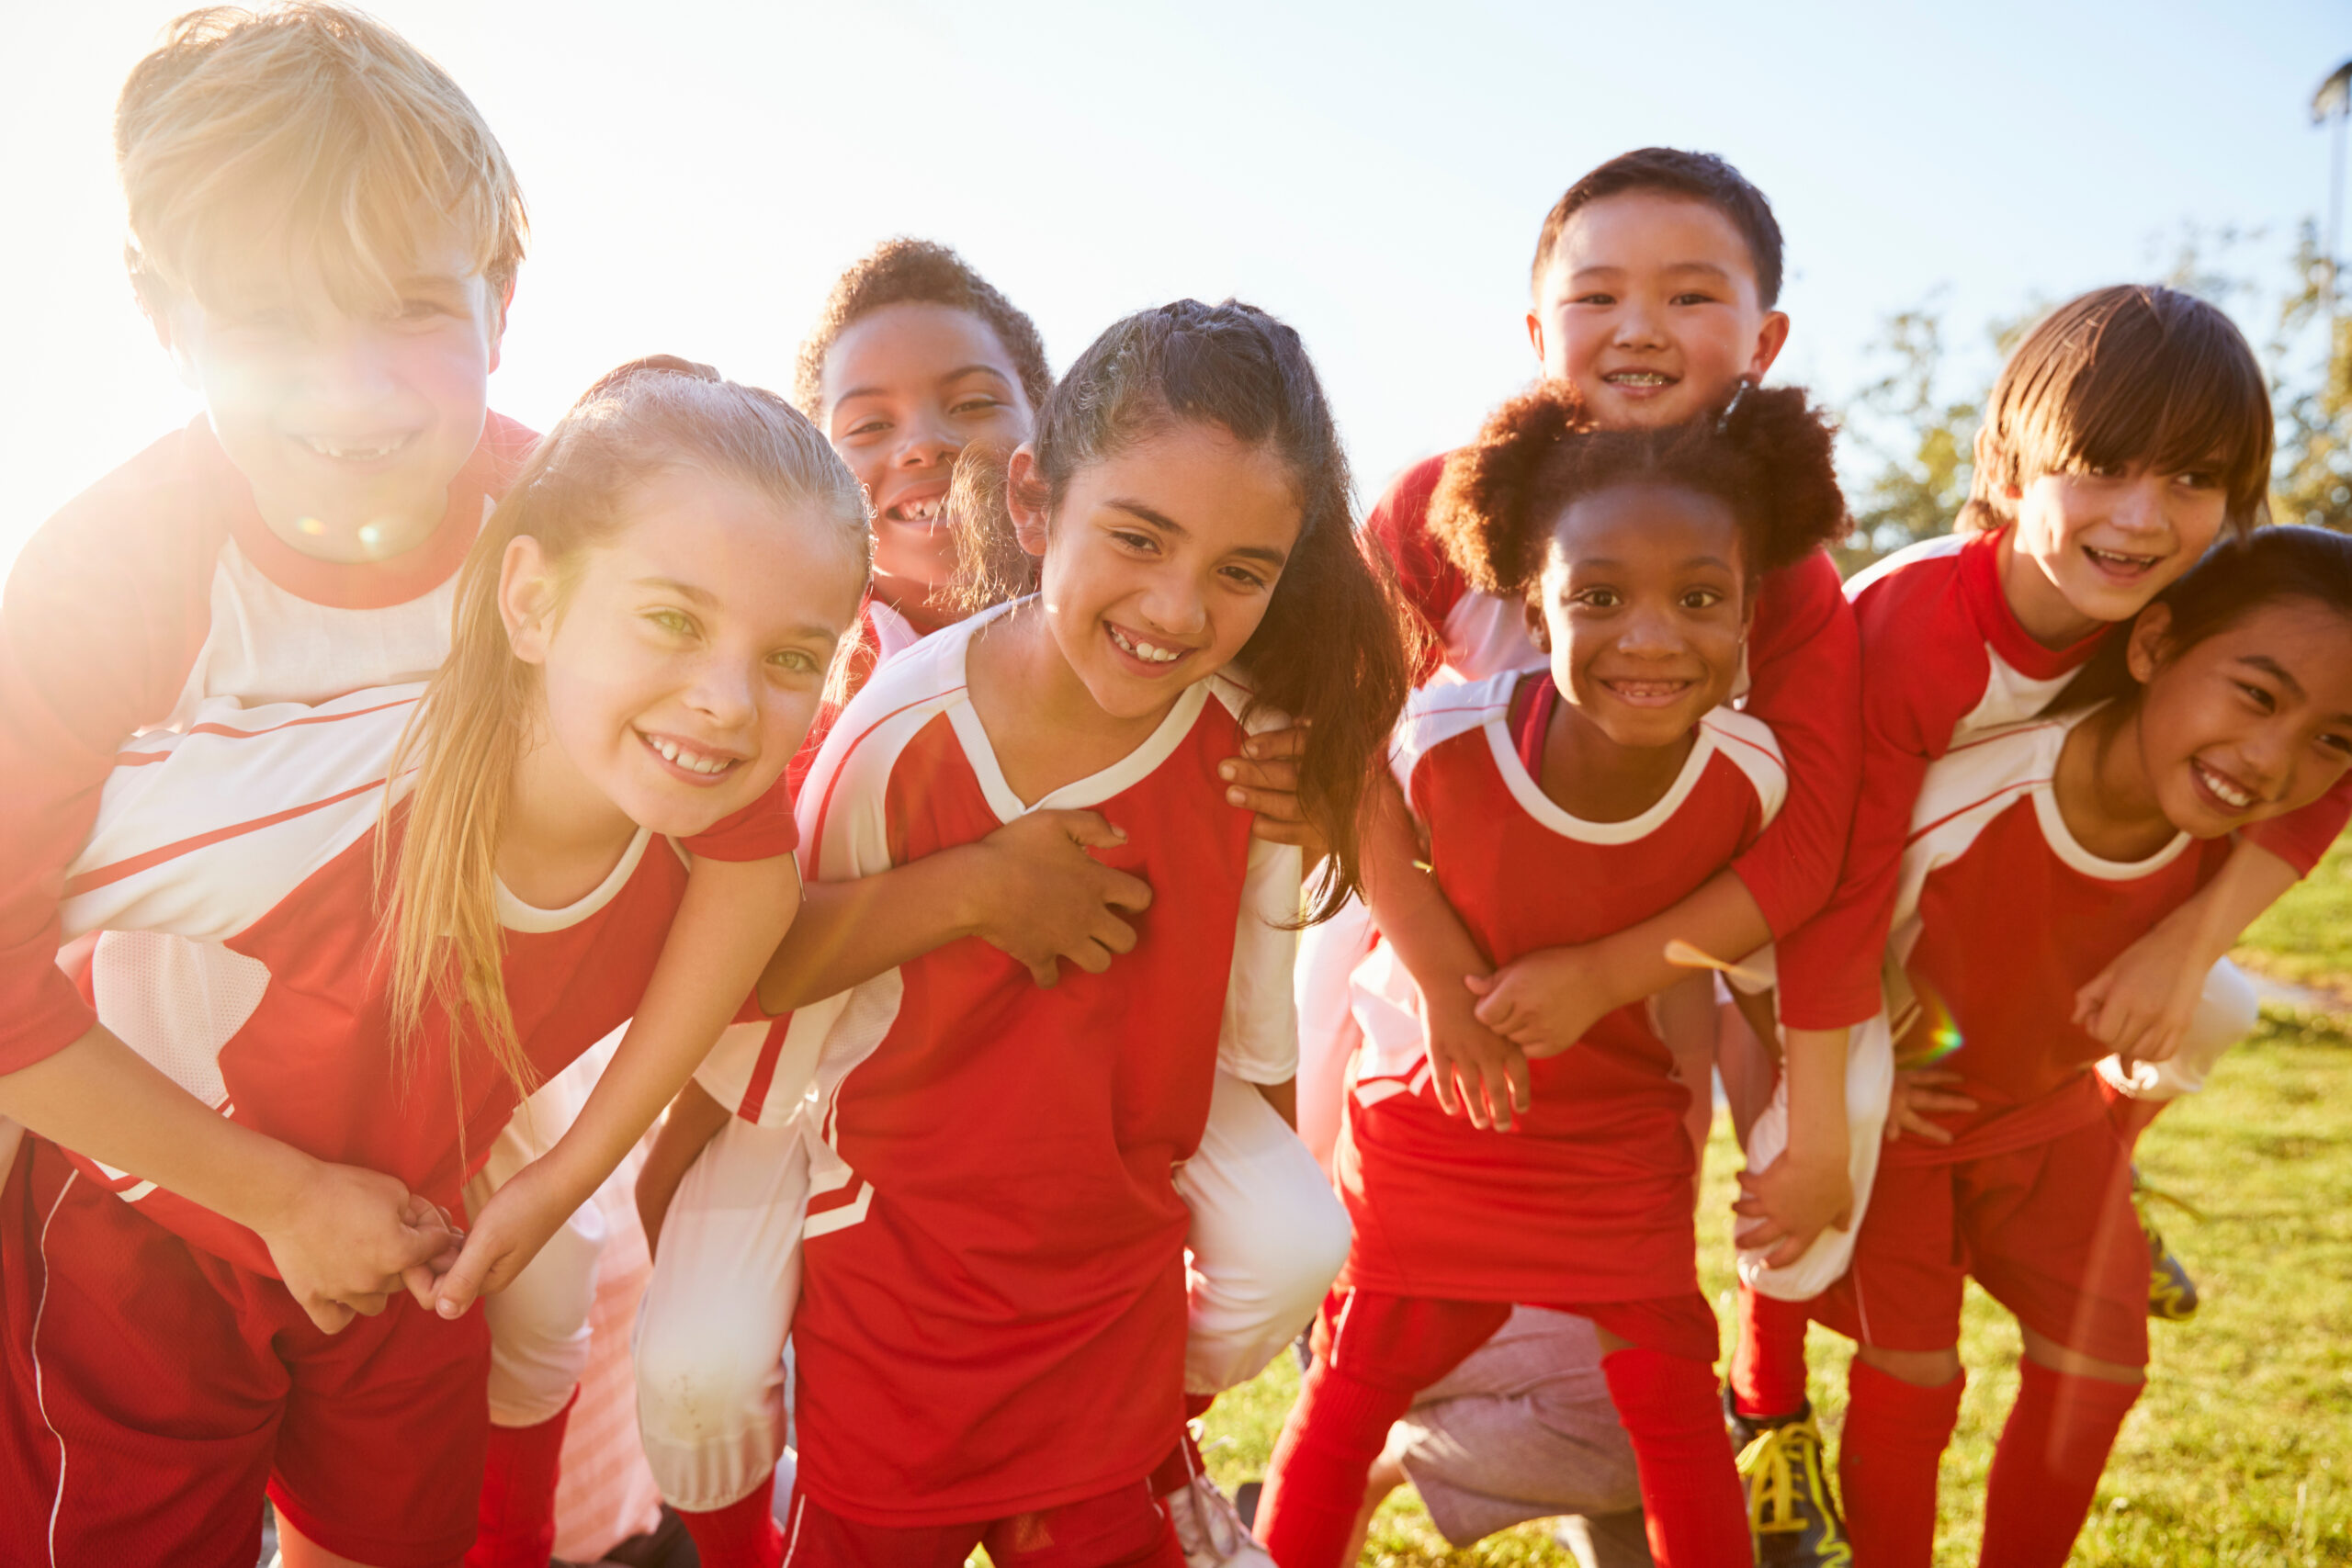 Primary School Children in PE showing enjoyment, sportsmanship and teamwork